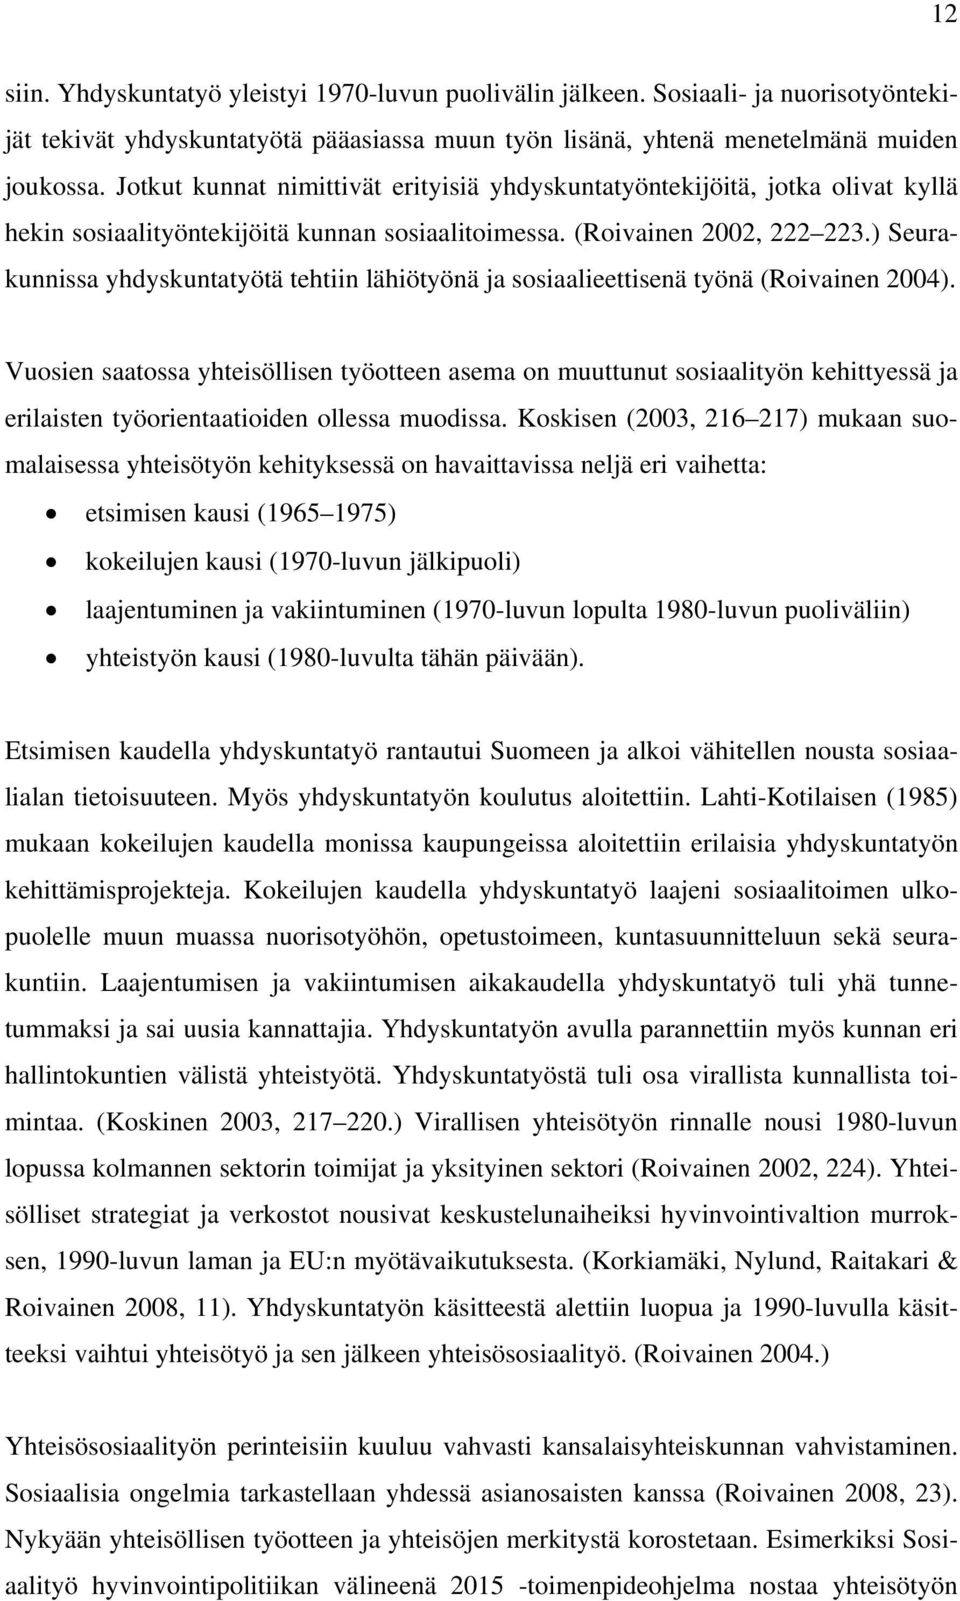 ) Seurakunnissa yhdyskuntatyötä tehtiin lähiötyönä ja sosiaalieettisenä työnä (Roivainen 2004).